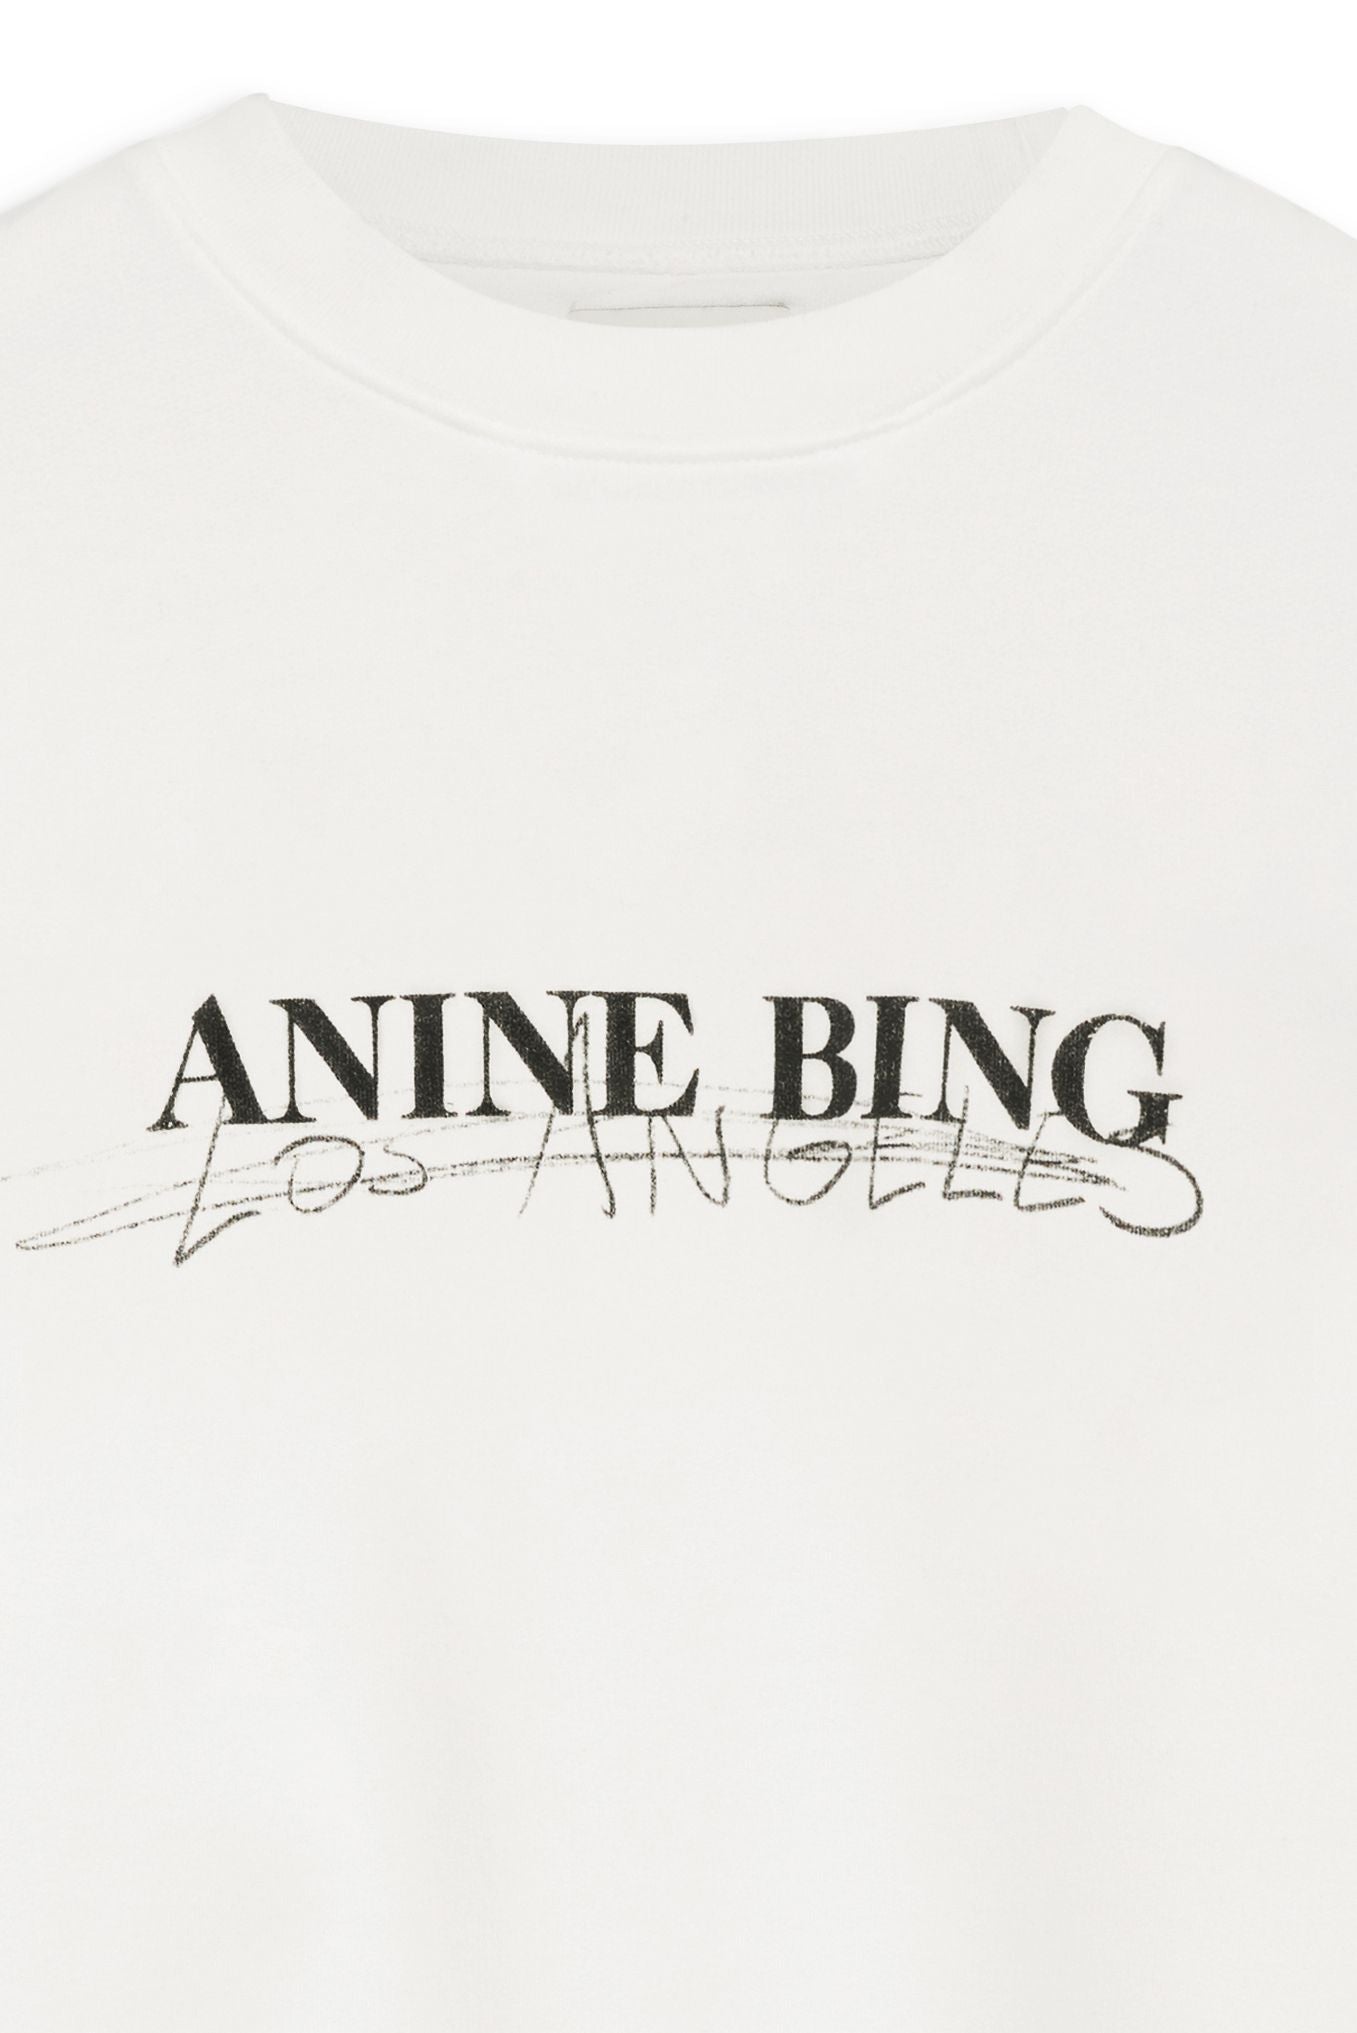 Anine Bing Ramona Sweatshirt Doodle - Ivory